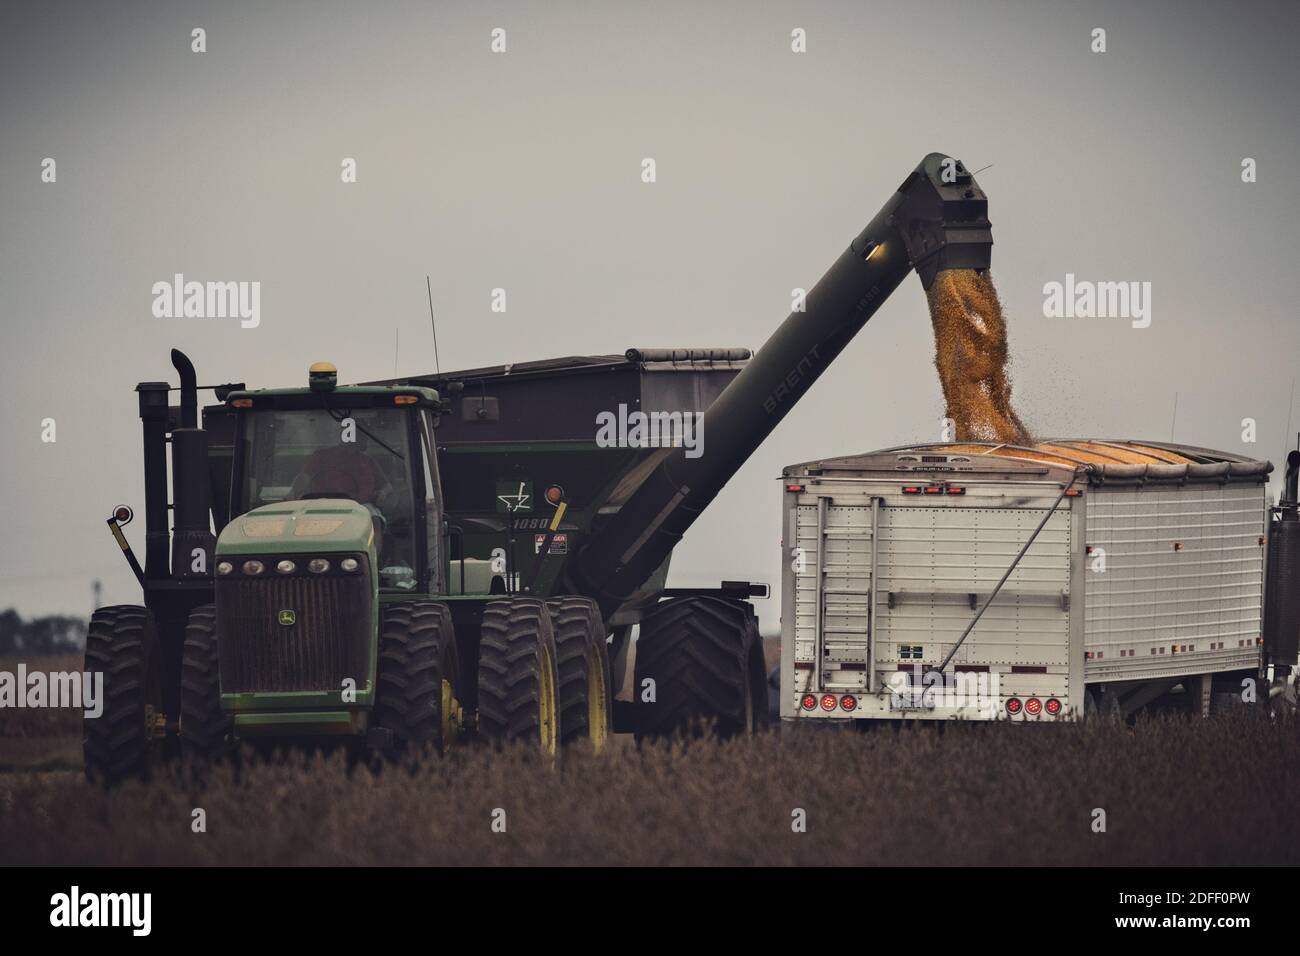 Un semi per il trasporto della granella viene caricato da un trattore John Deere e da un carro a gravità nella contea di Jackson, Indiana. La scena è parzialmente oscura dalla soia. Foto Stock